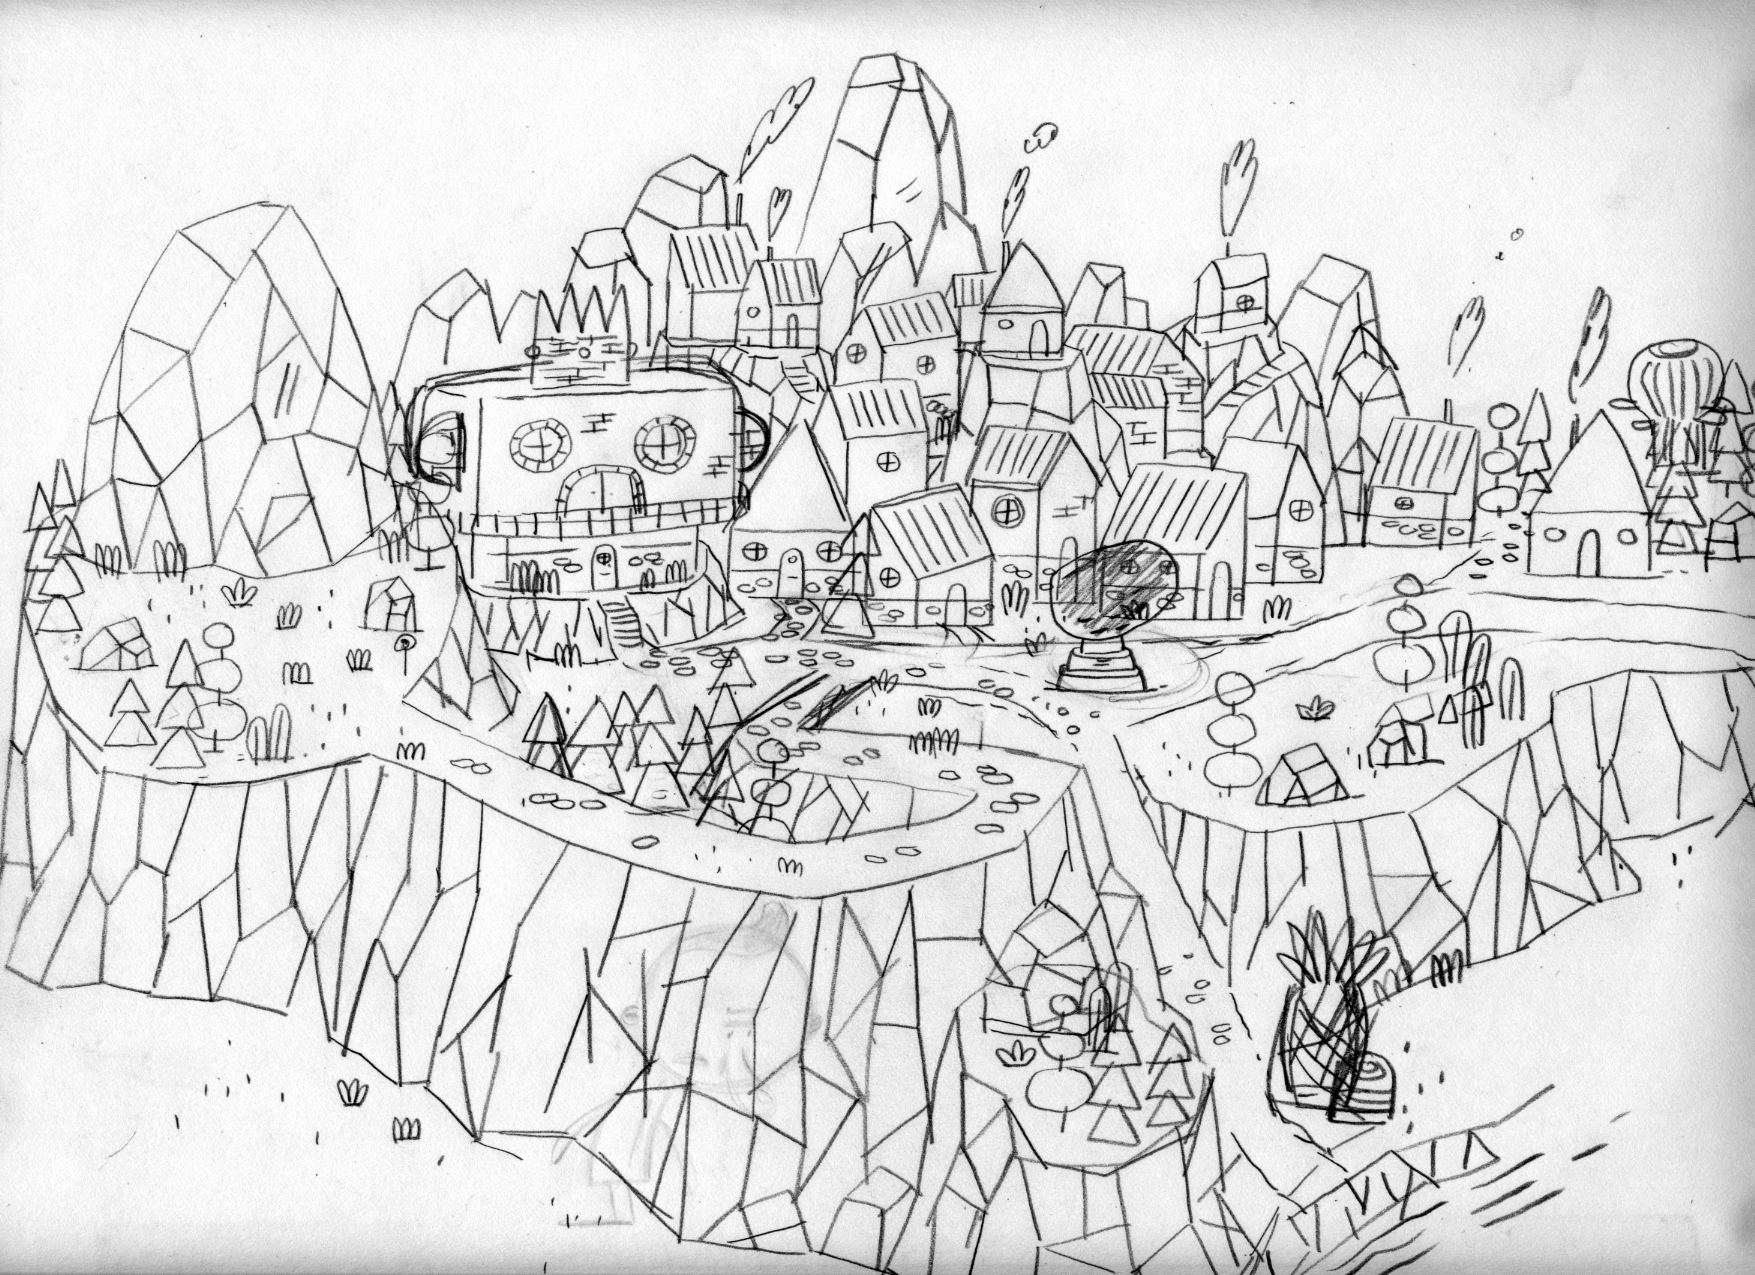 Esquisse du village de Patateland tel qu'imaginé par Patrick Doyon, l'illustrateur du jeu.